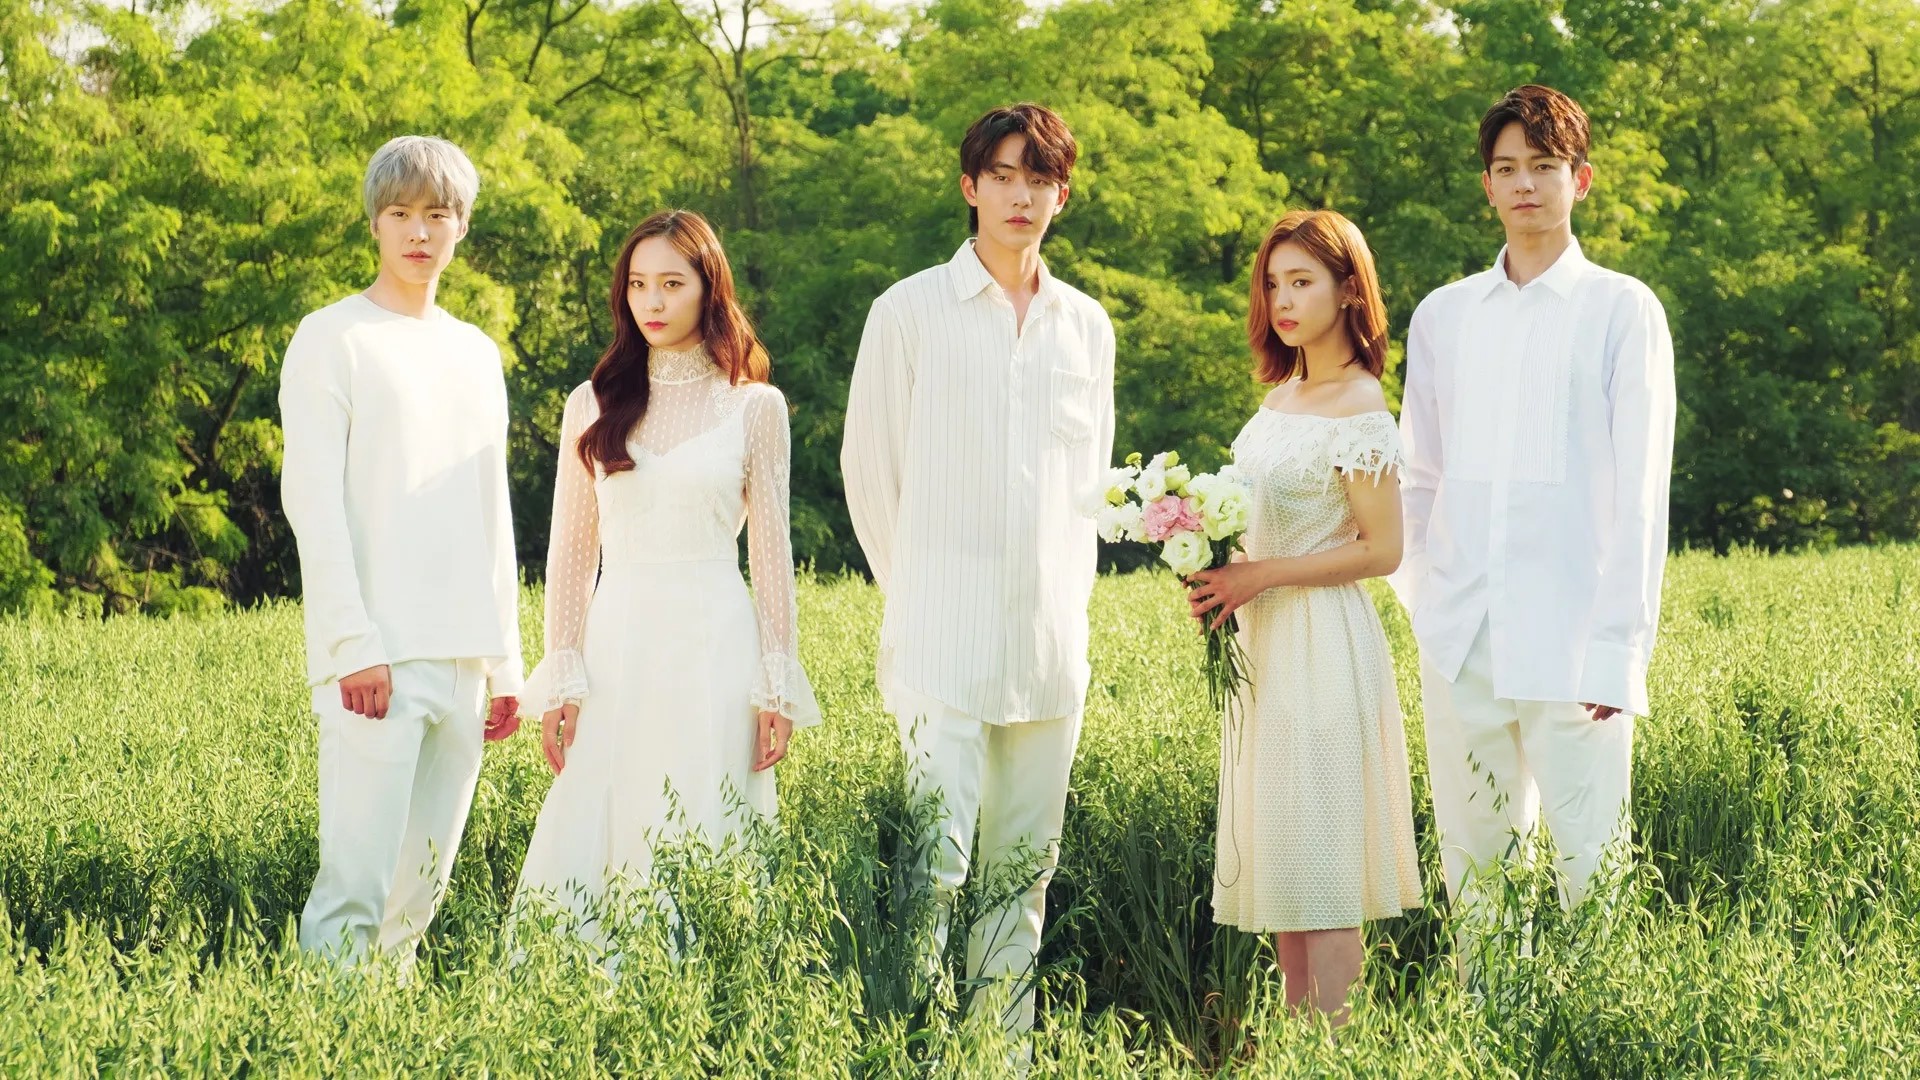 لیست بهترین سریال های نام جو هیوک؛ سریال عروس خدای آب - The Bride of Habaek